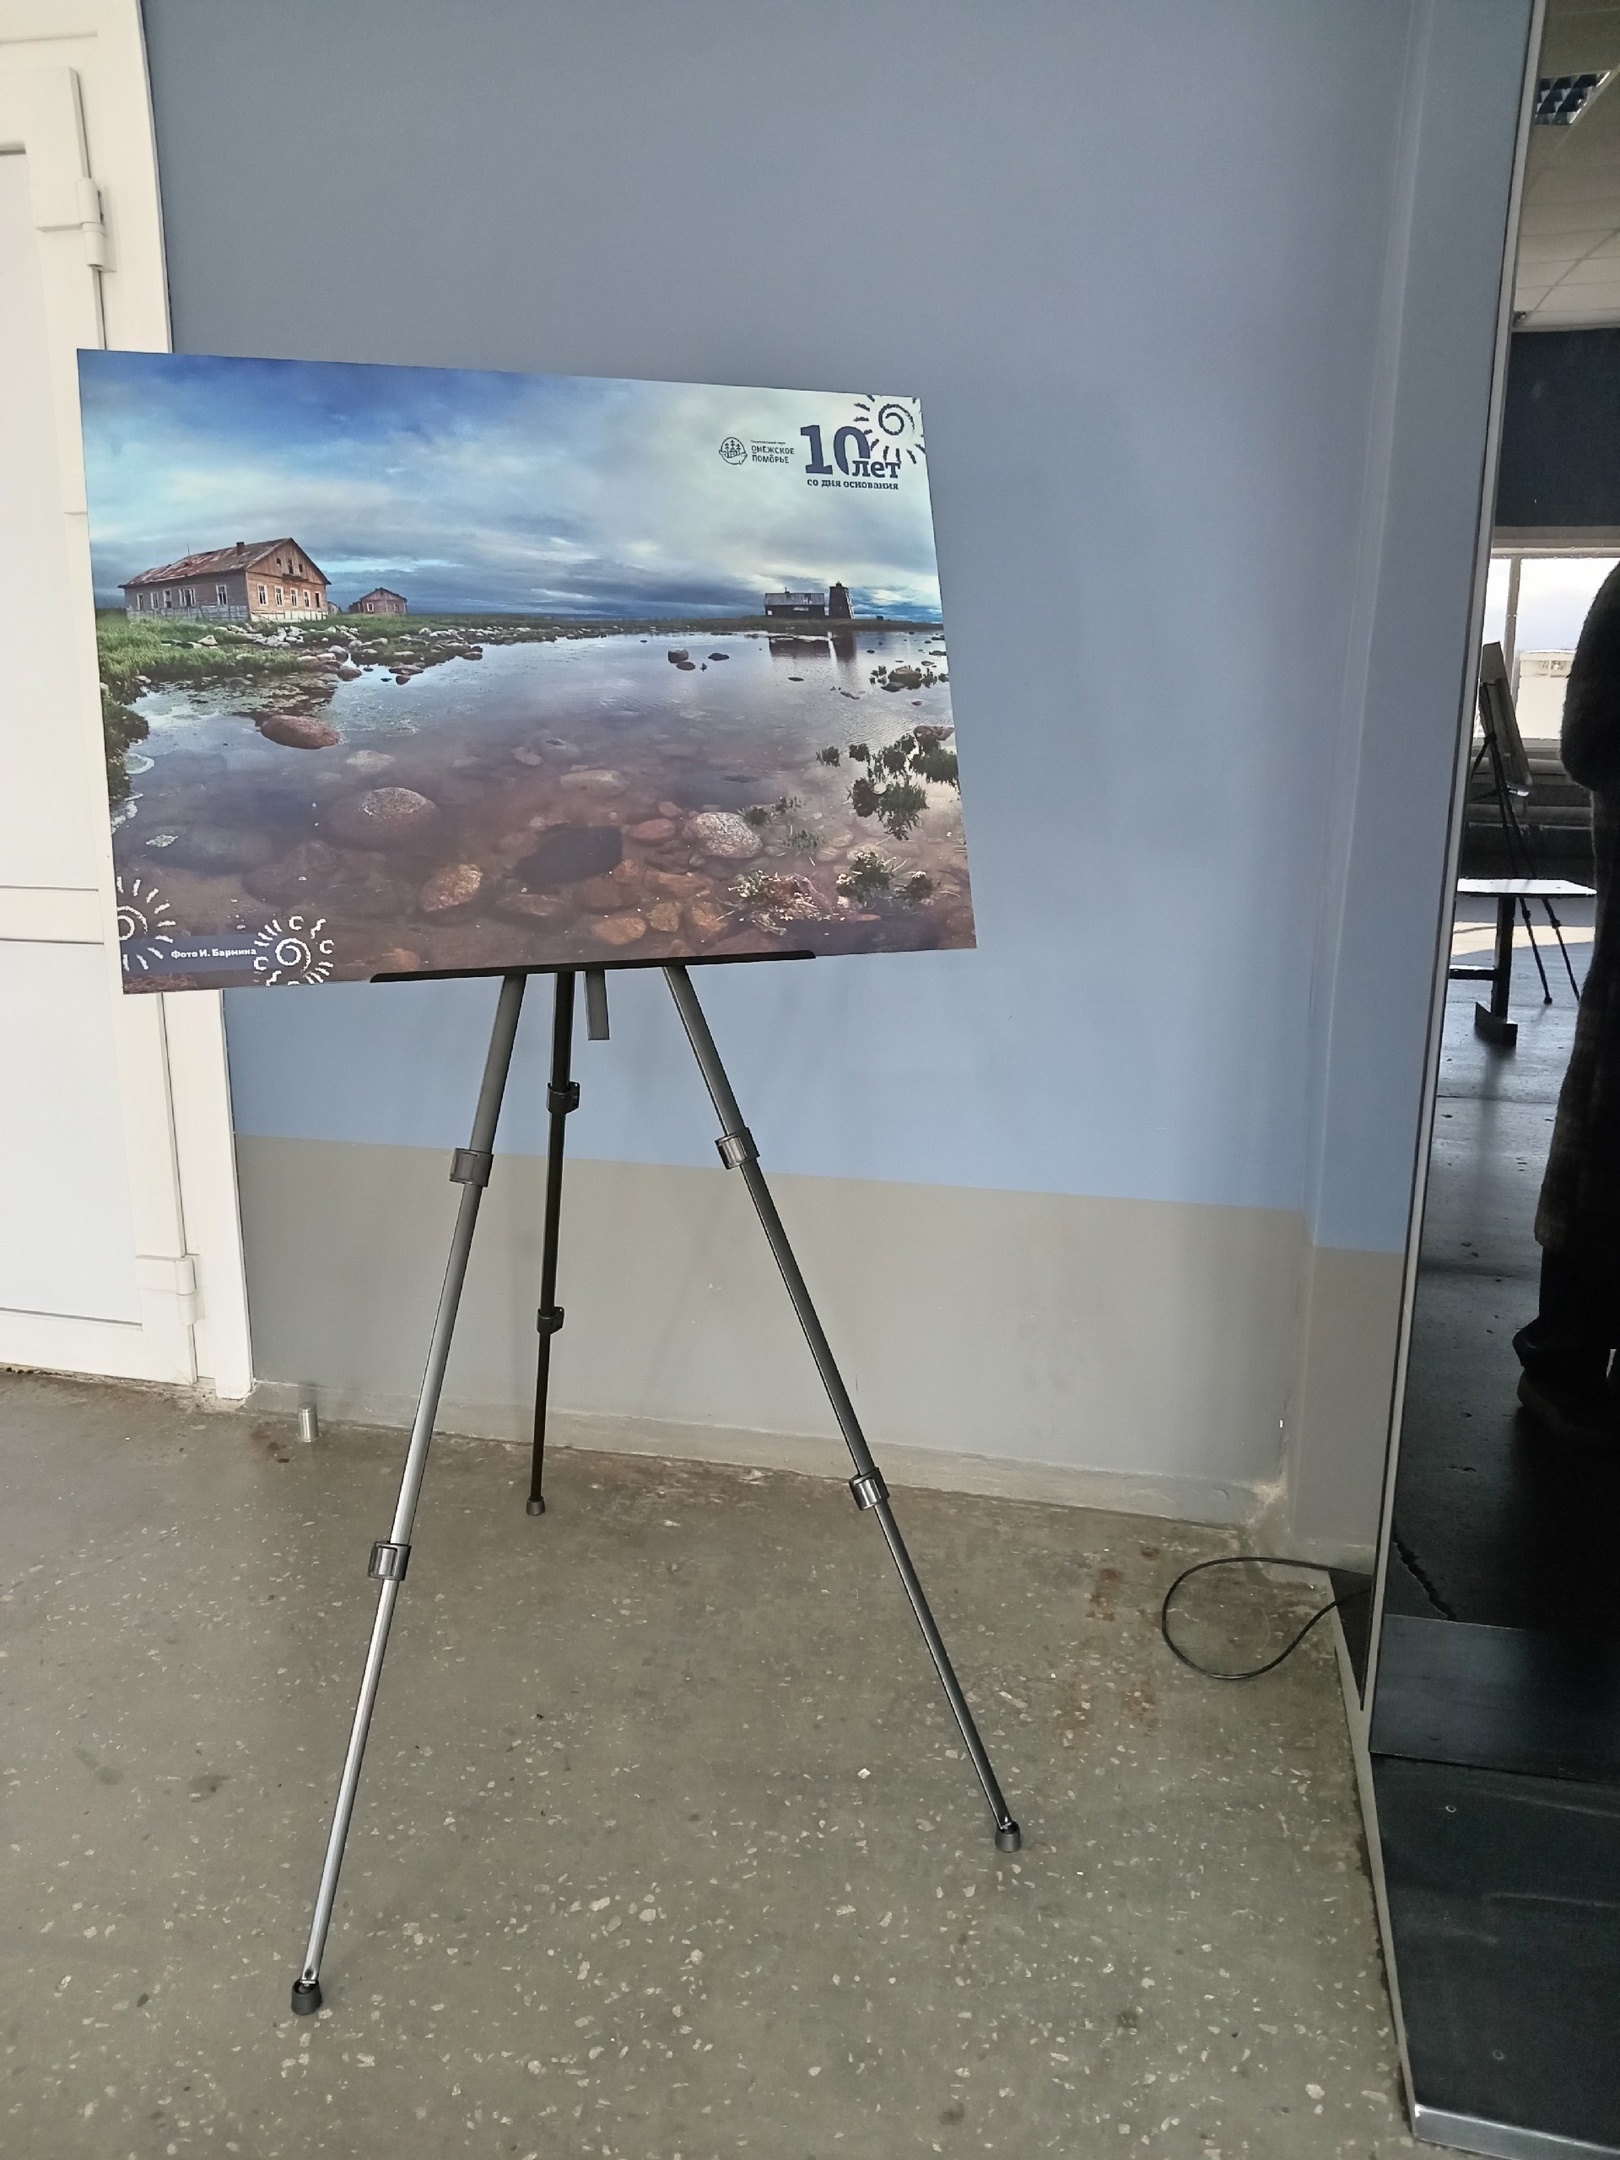 В аэропорту «Васьково» открылась фотовыставка, посвящённая 10-летию «Онежского Поморья» - фото 4